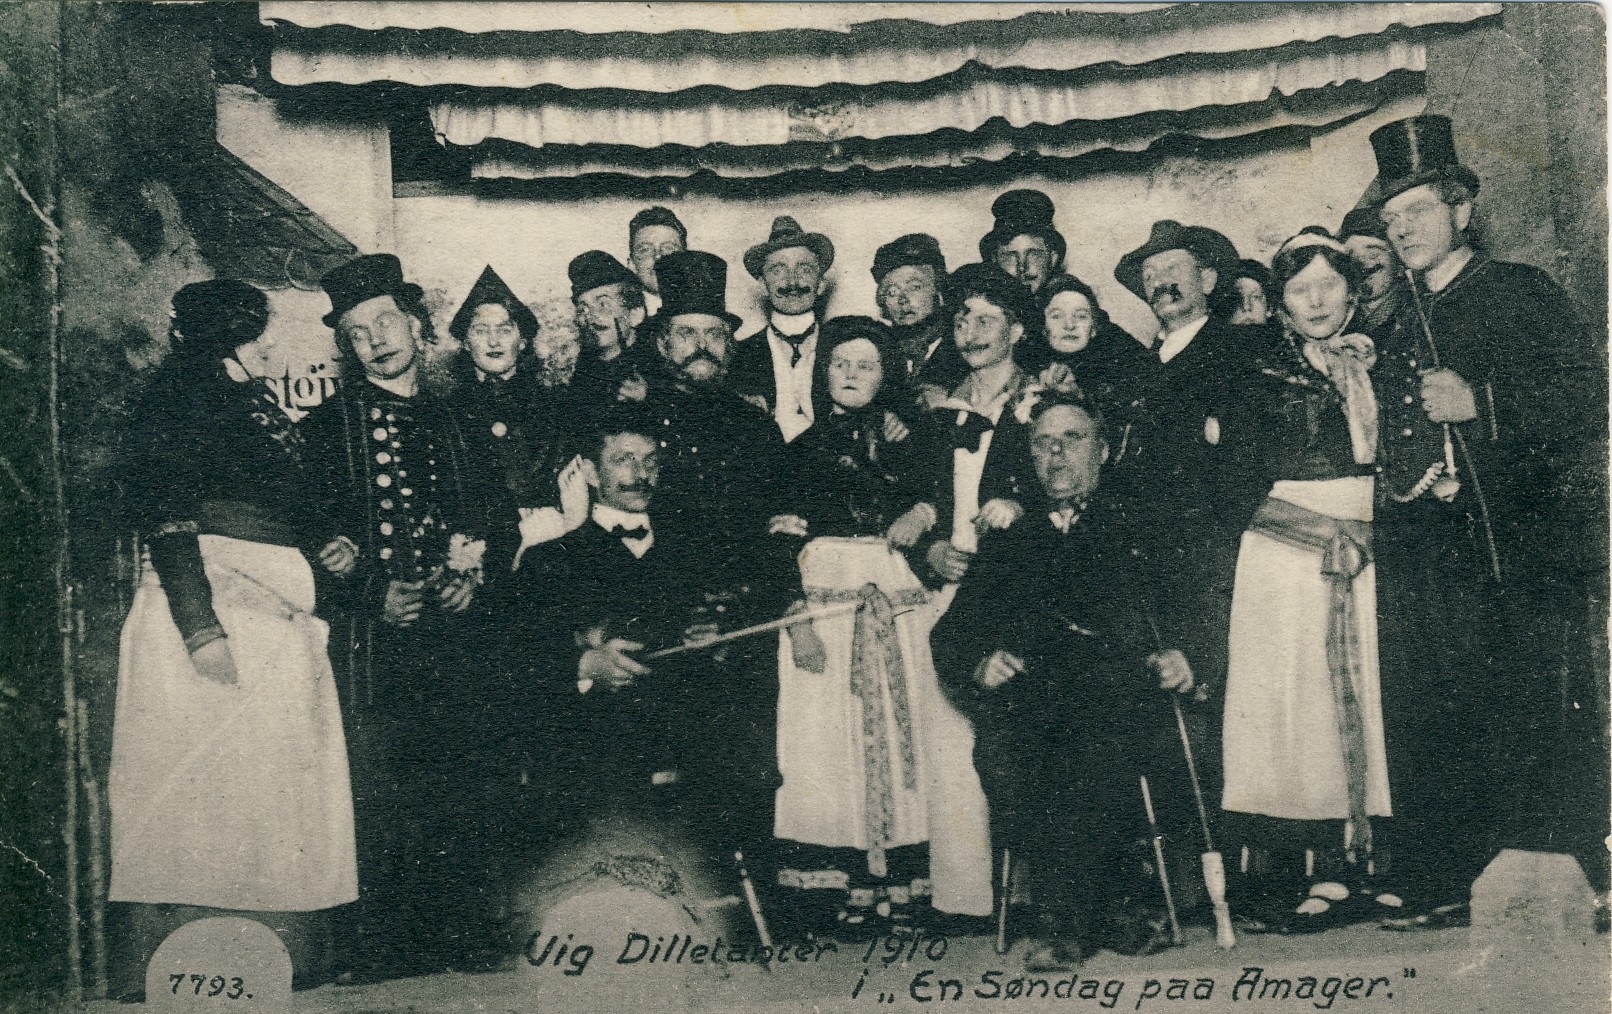 Dilettant-Vig Forsamlingshus 1910 (B3463)